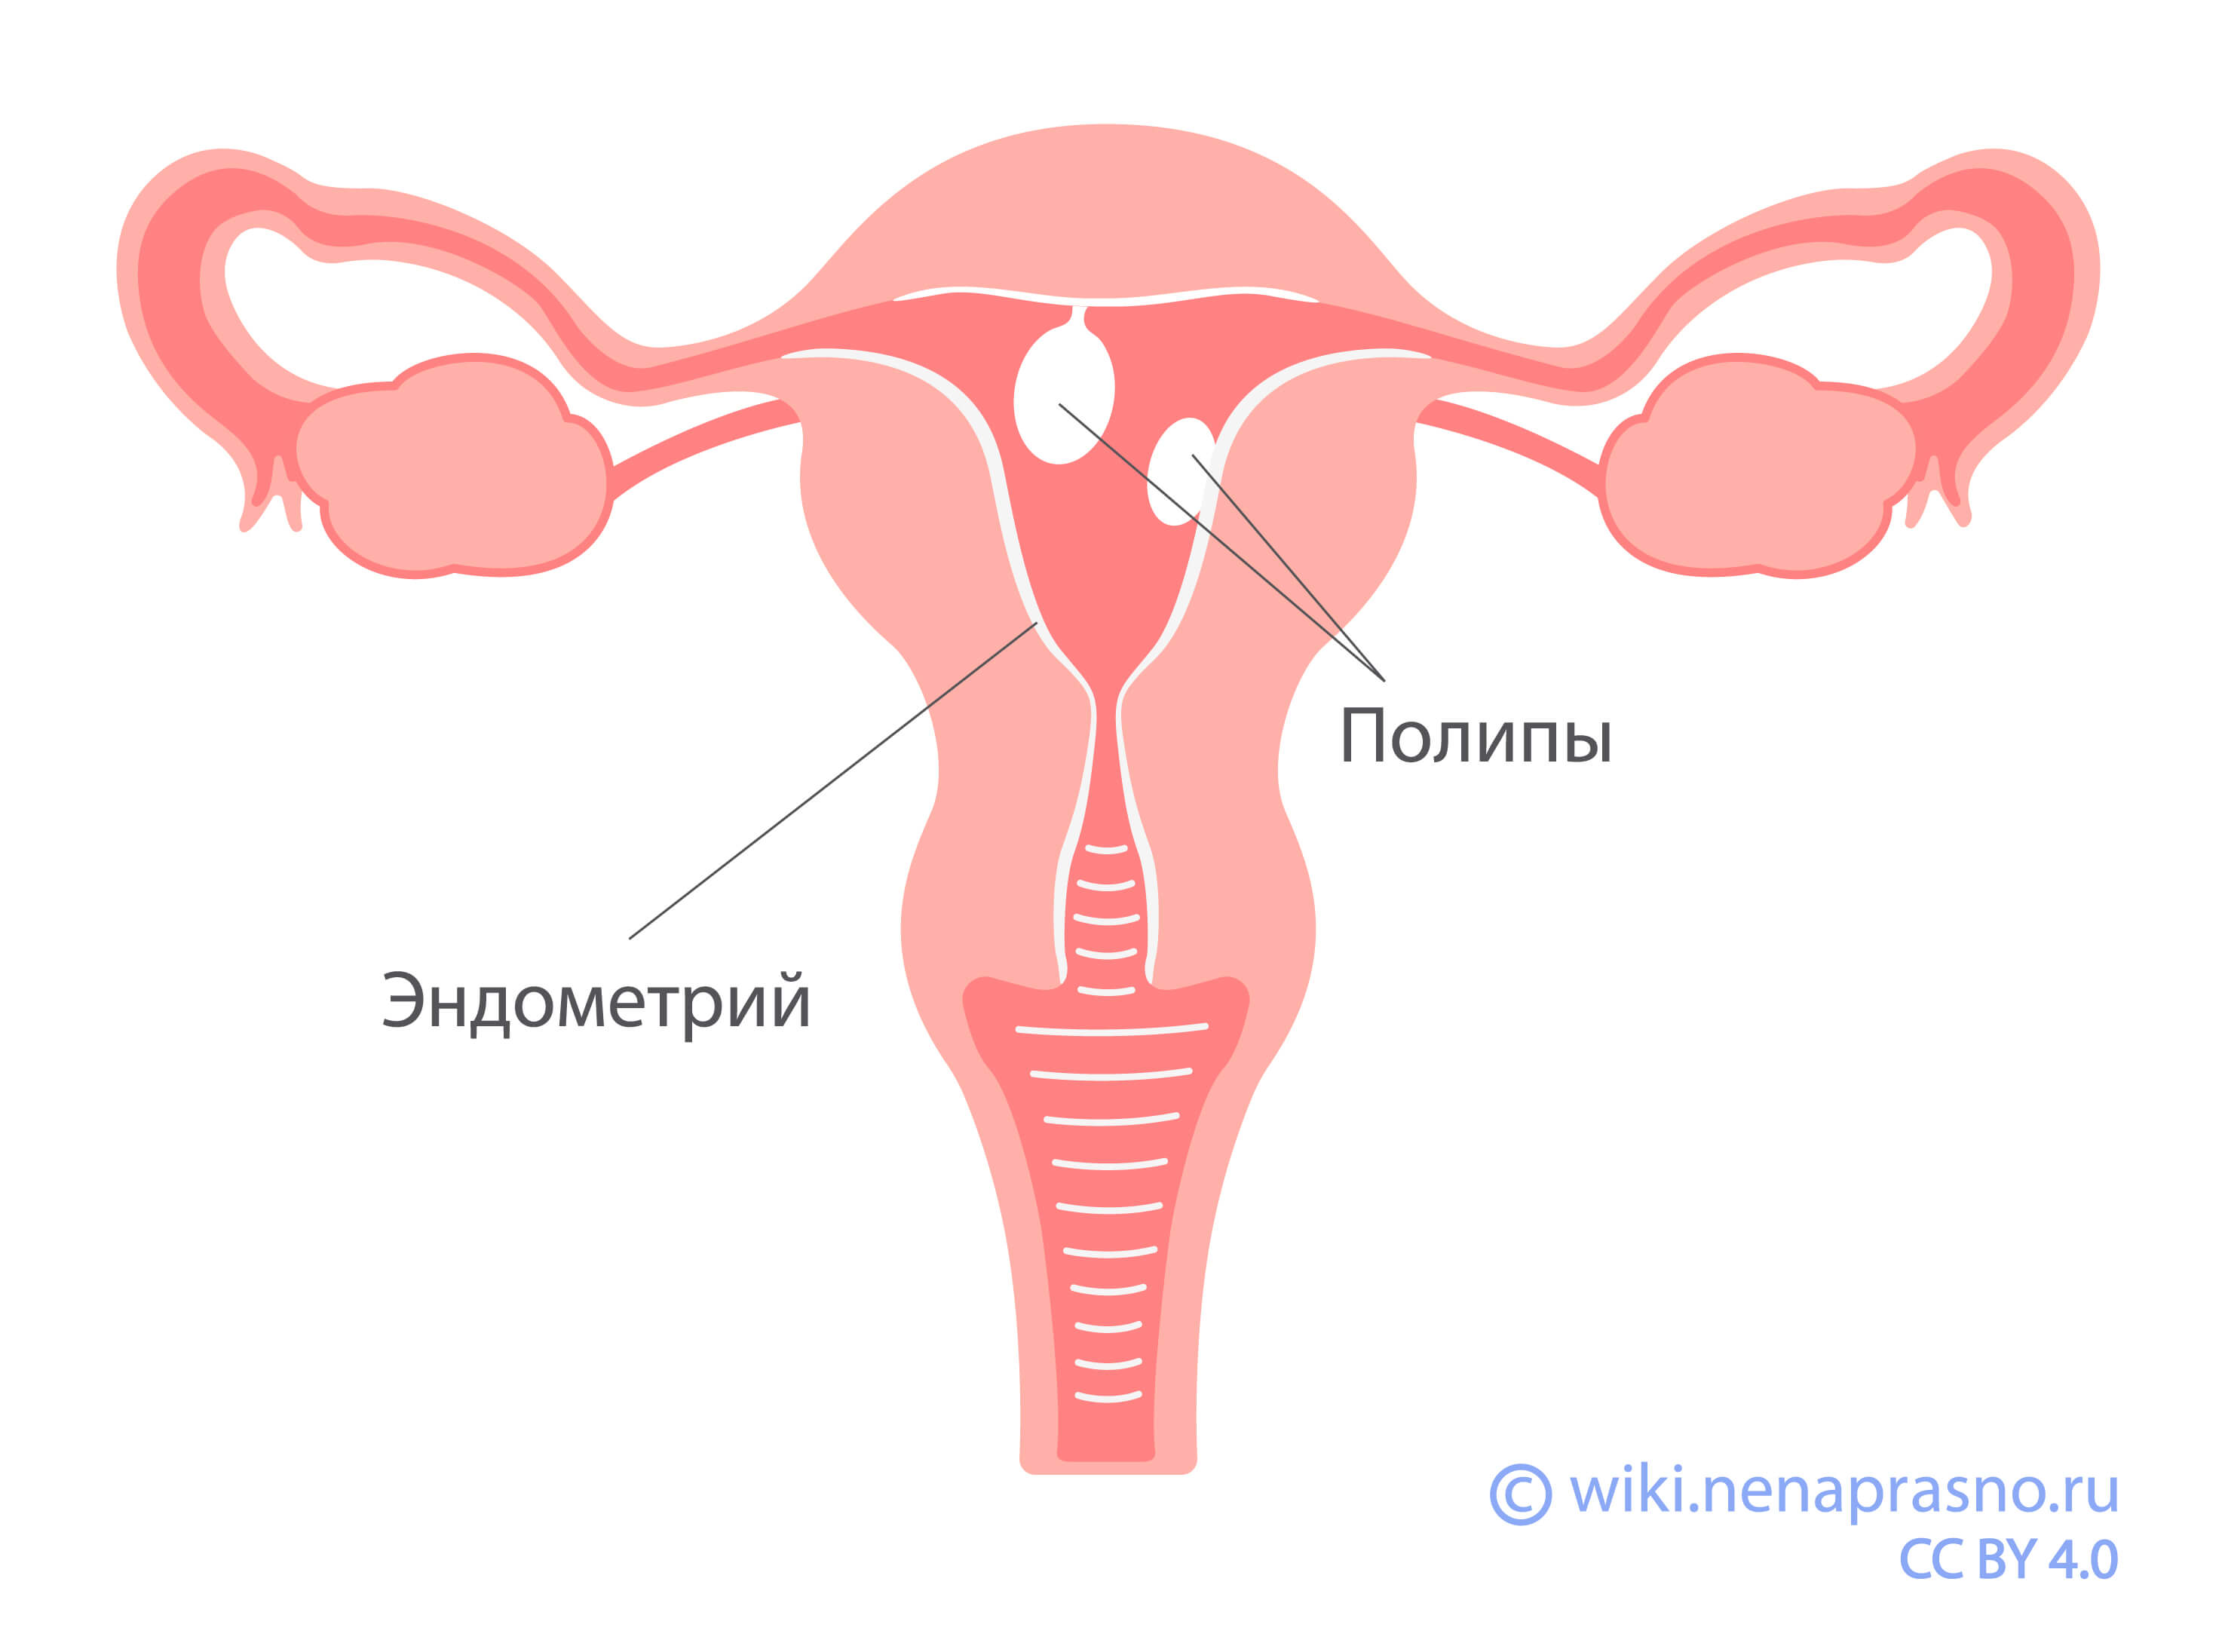 оргазм при удалении матки и яичников фото 10